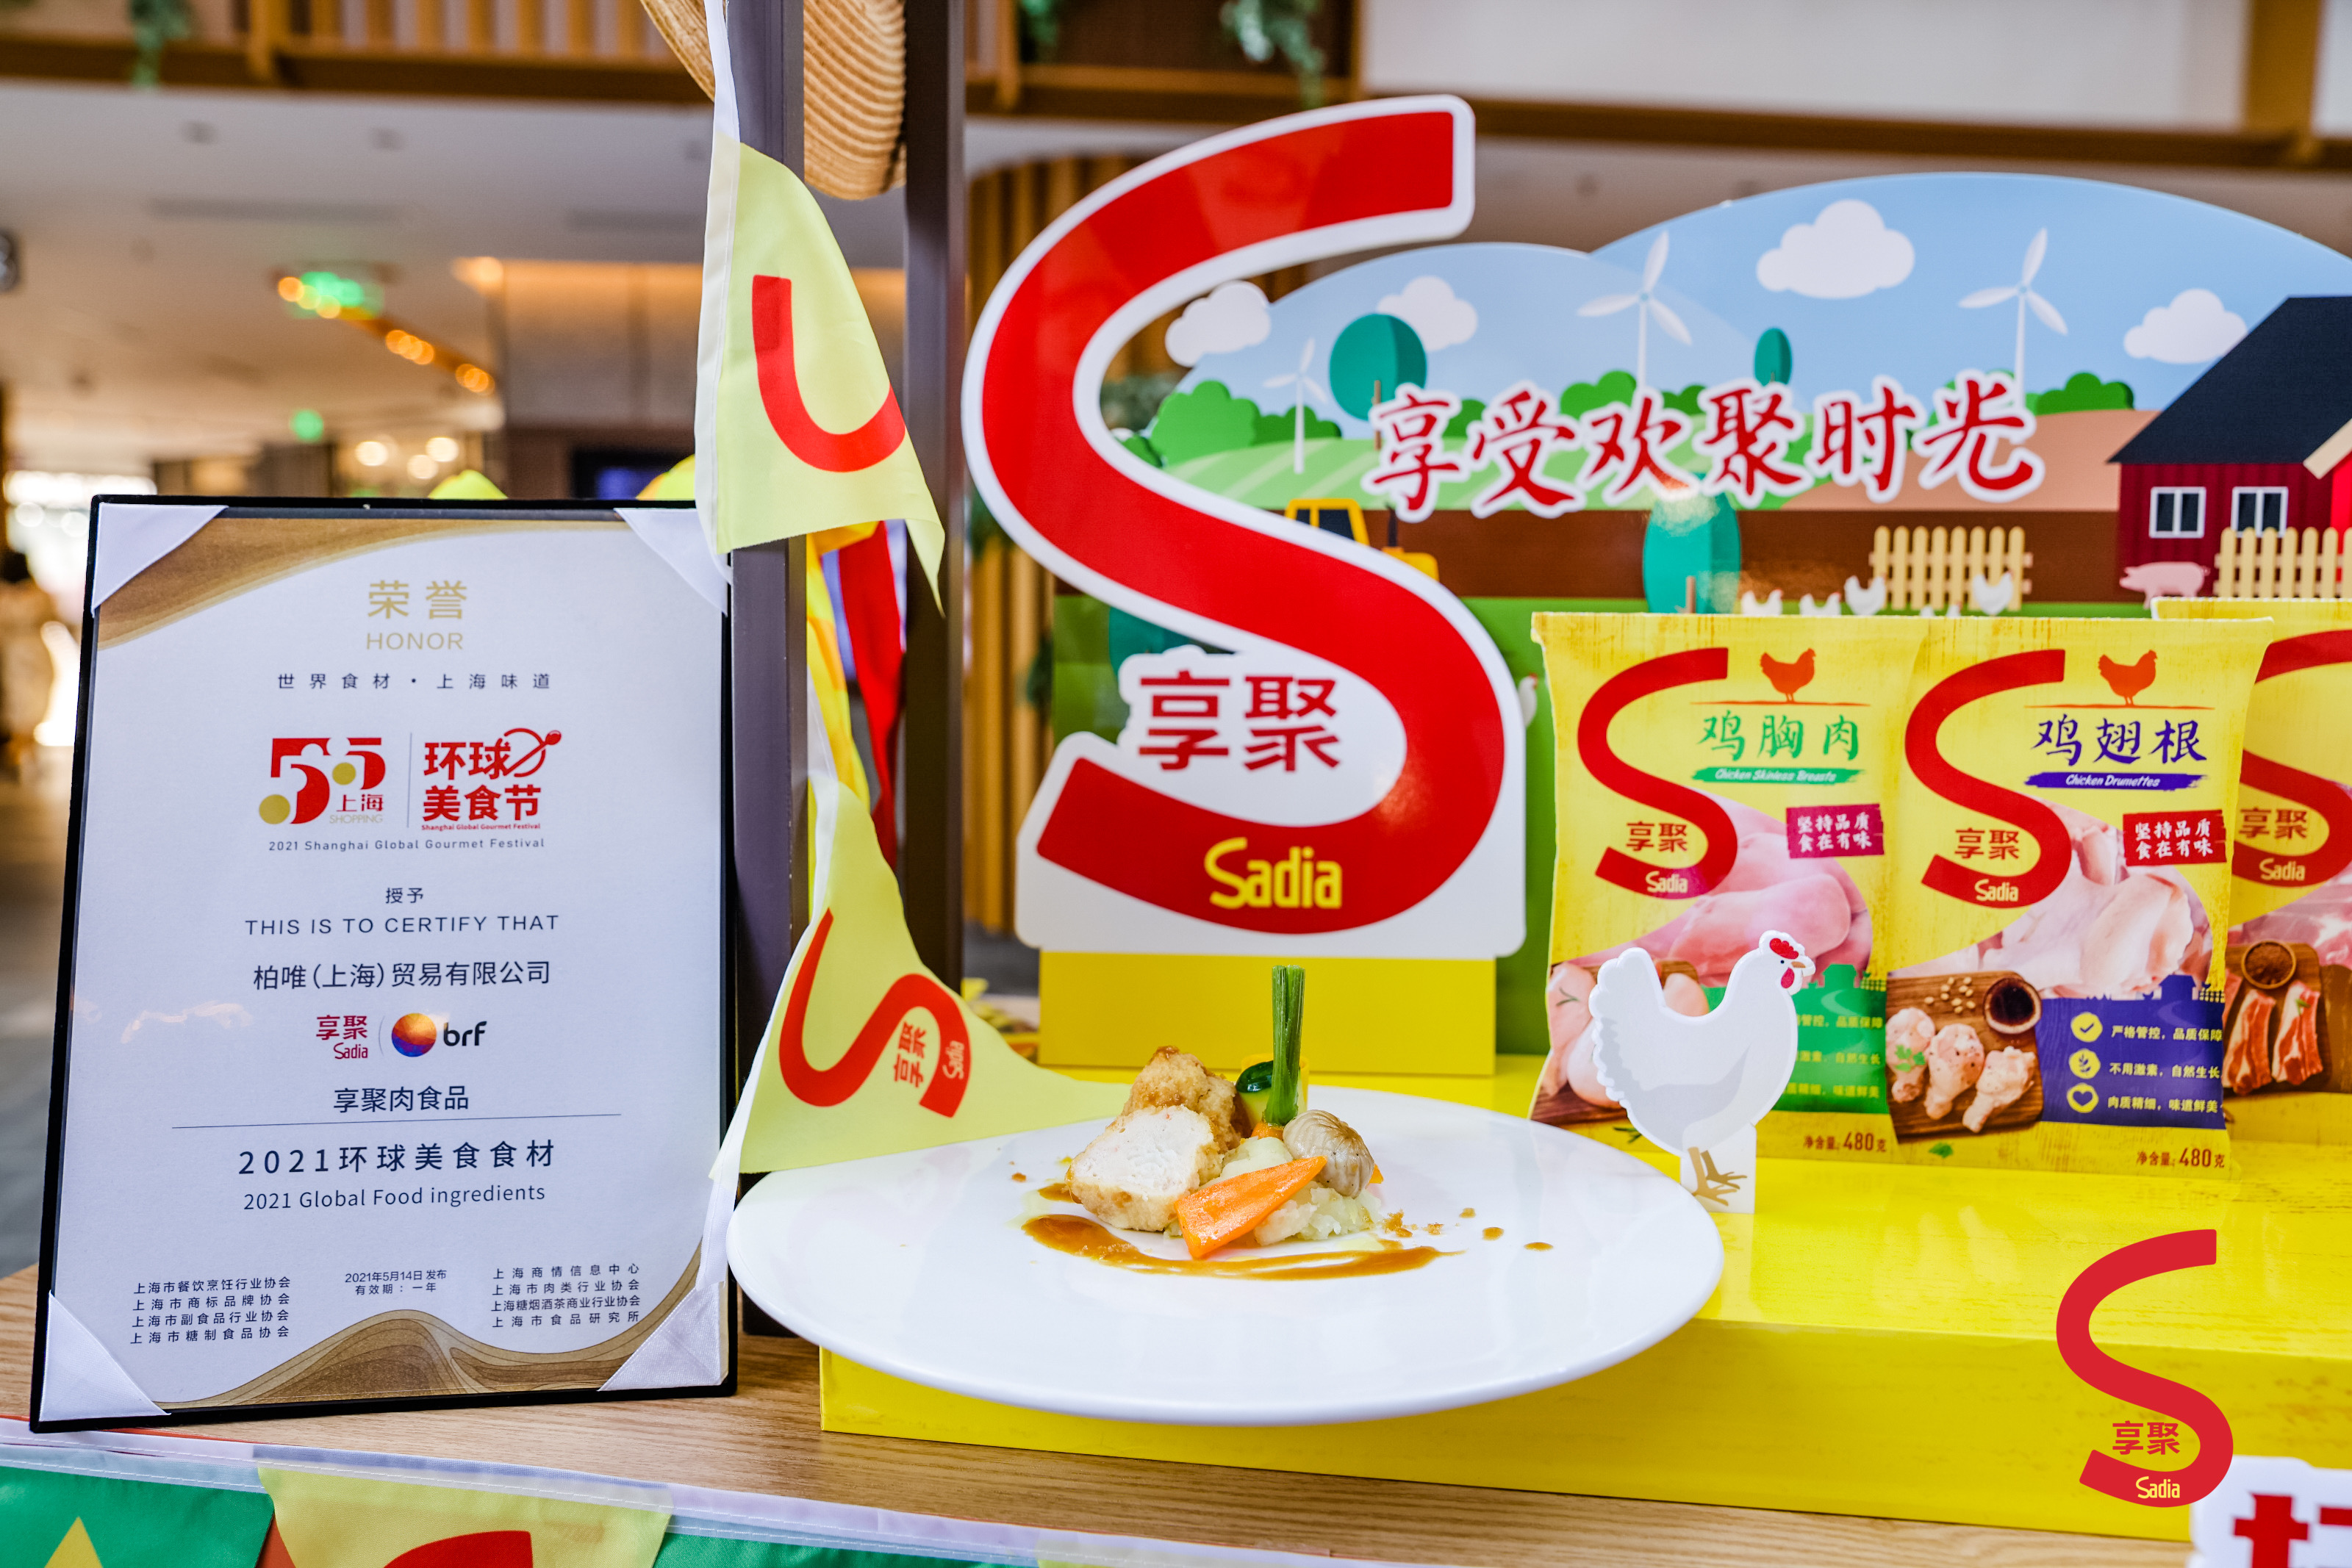 官宣啦!sadia享聚亮相上海"五五购物节·环球美食节"